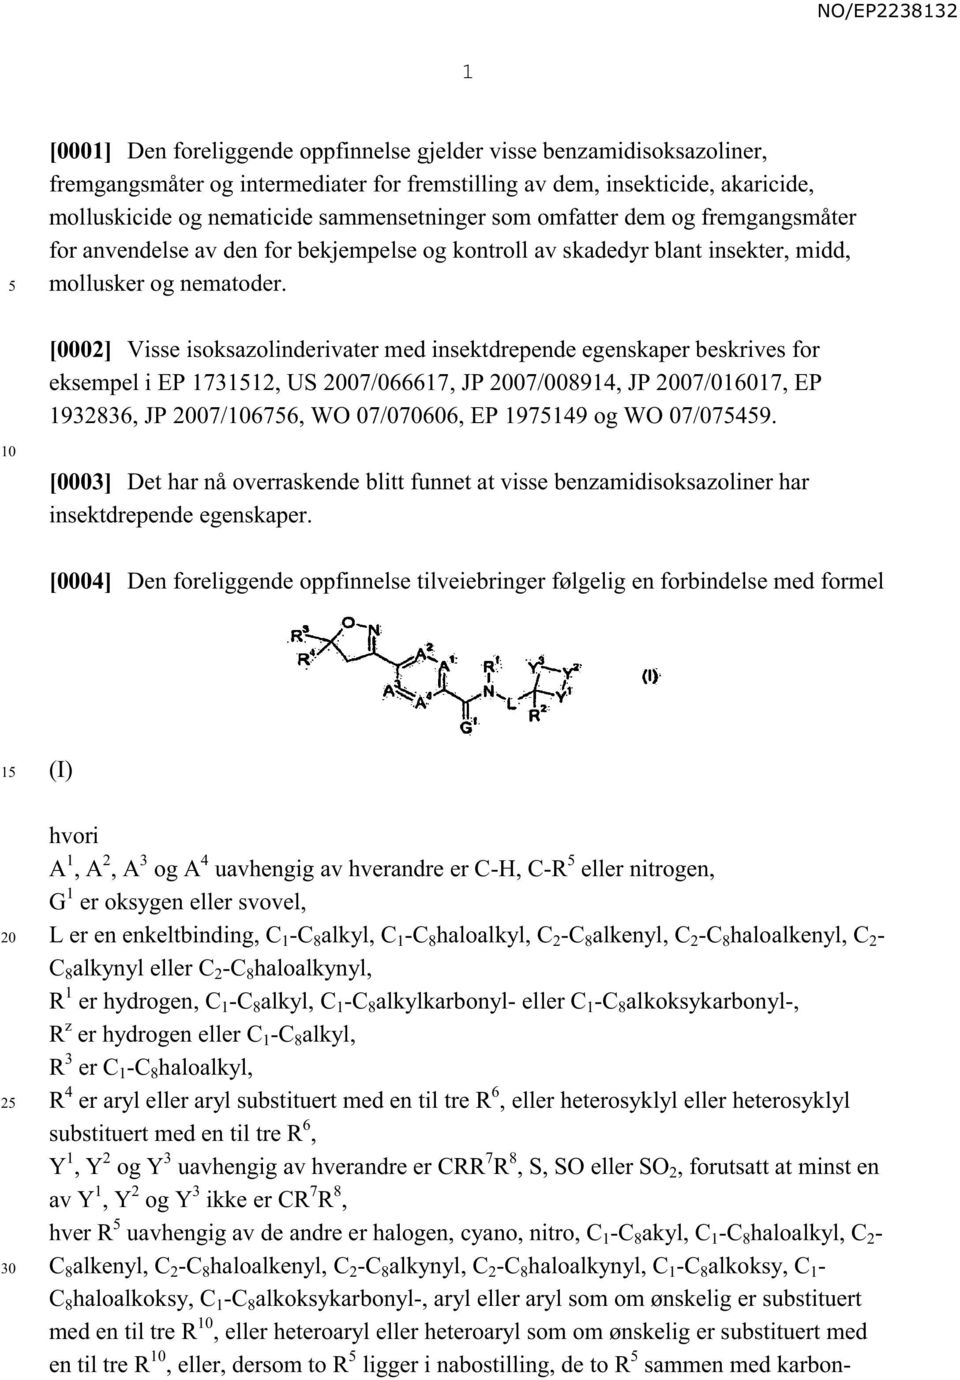 [0002] Visse isoksazolinderivater med insektdrepende egenskaper beskrives for eksempel i EP 173112, US 07/066617, JP 07/008914, JP 07/016017, EP 1932836, JP 07/676, WO 07/070606, EP 197149 og WO